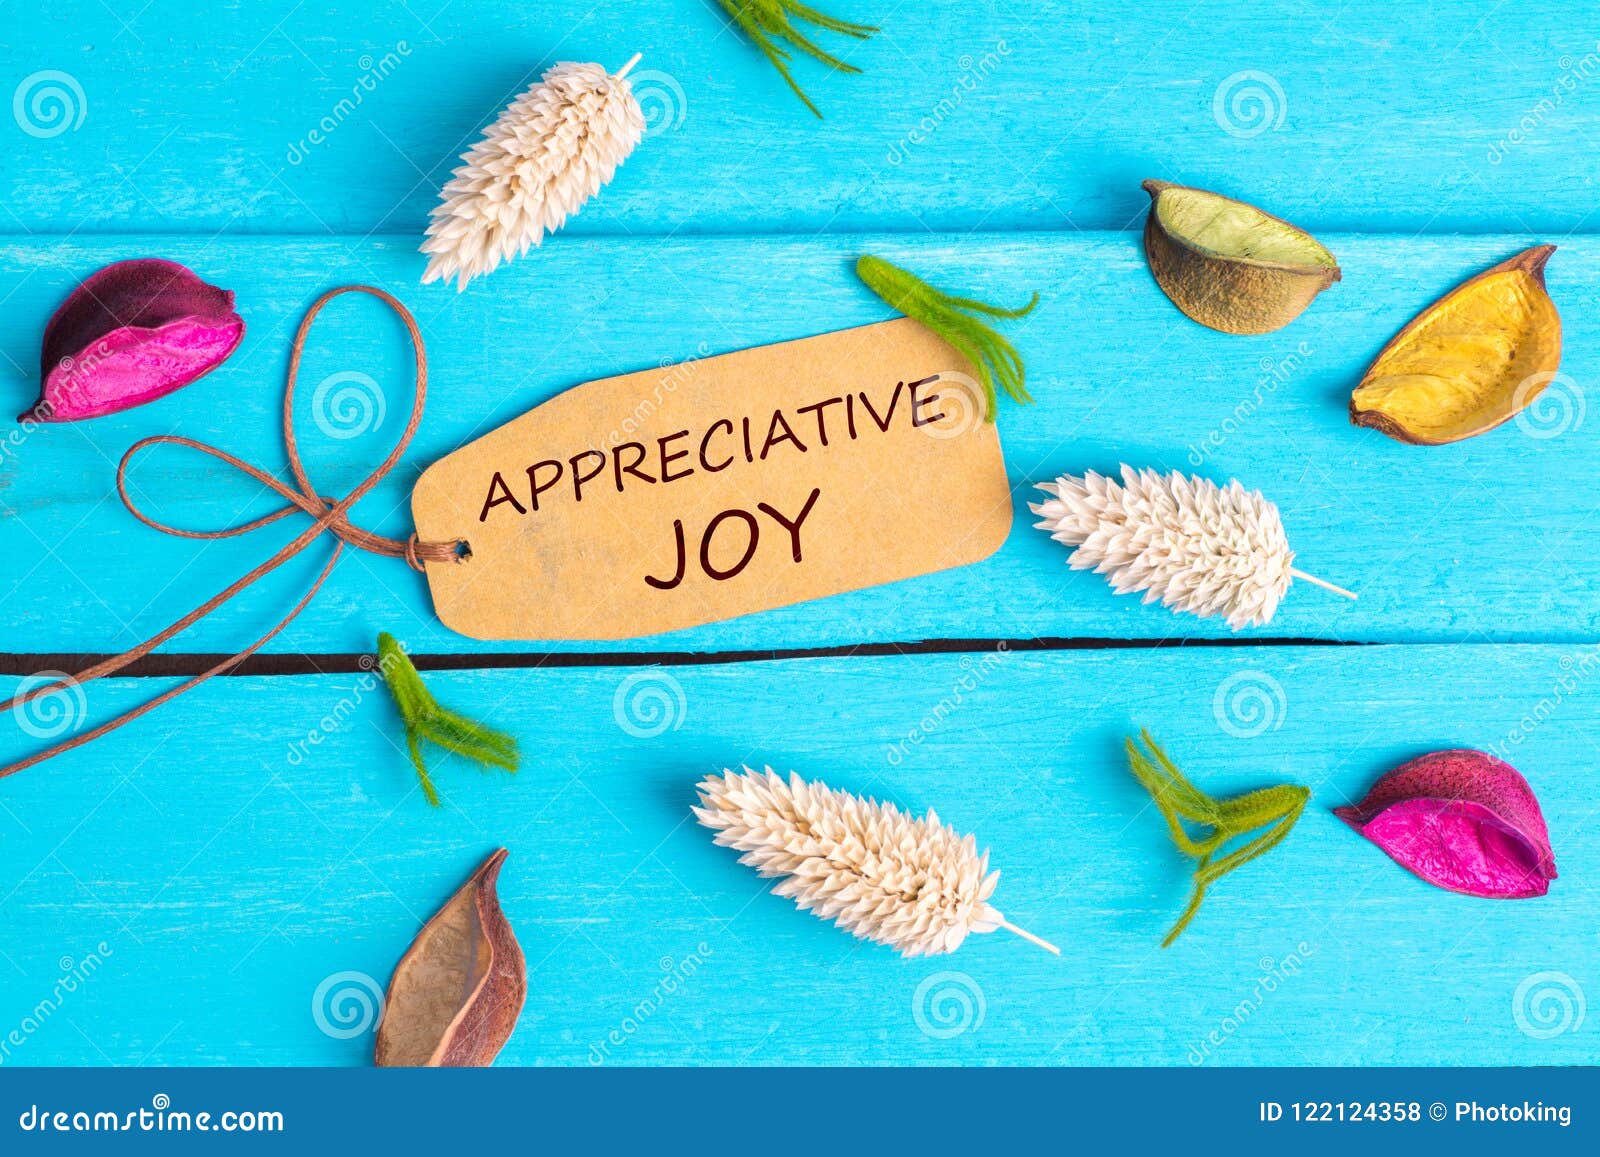 appreciative joy text on paper tag